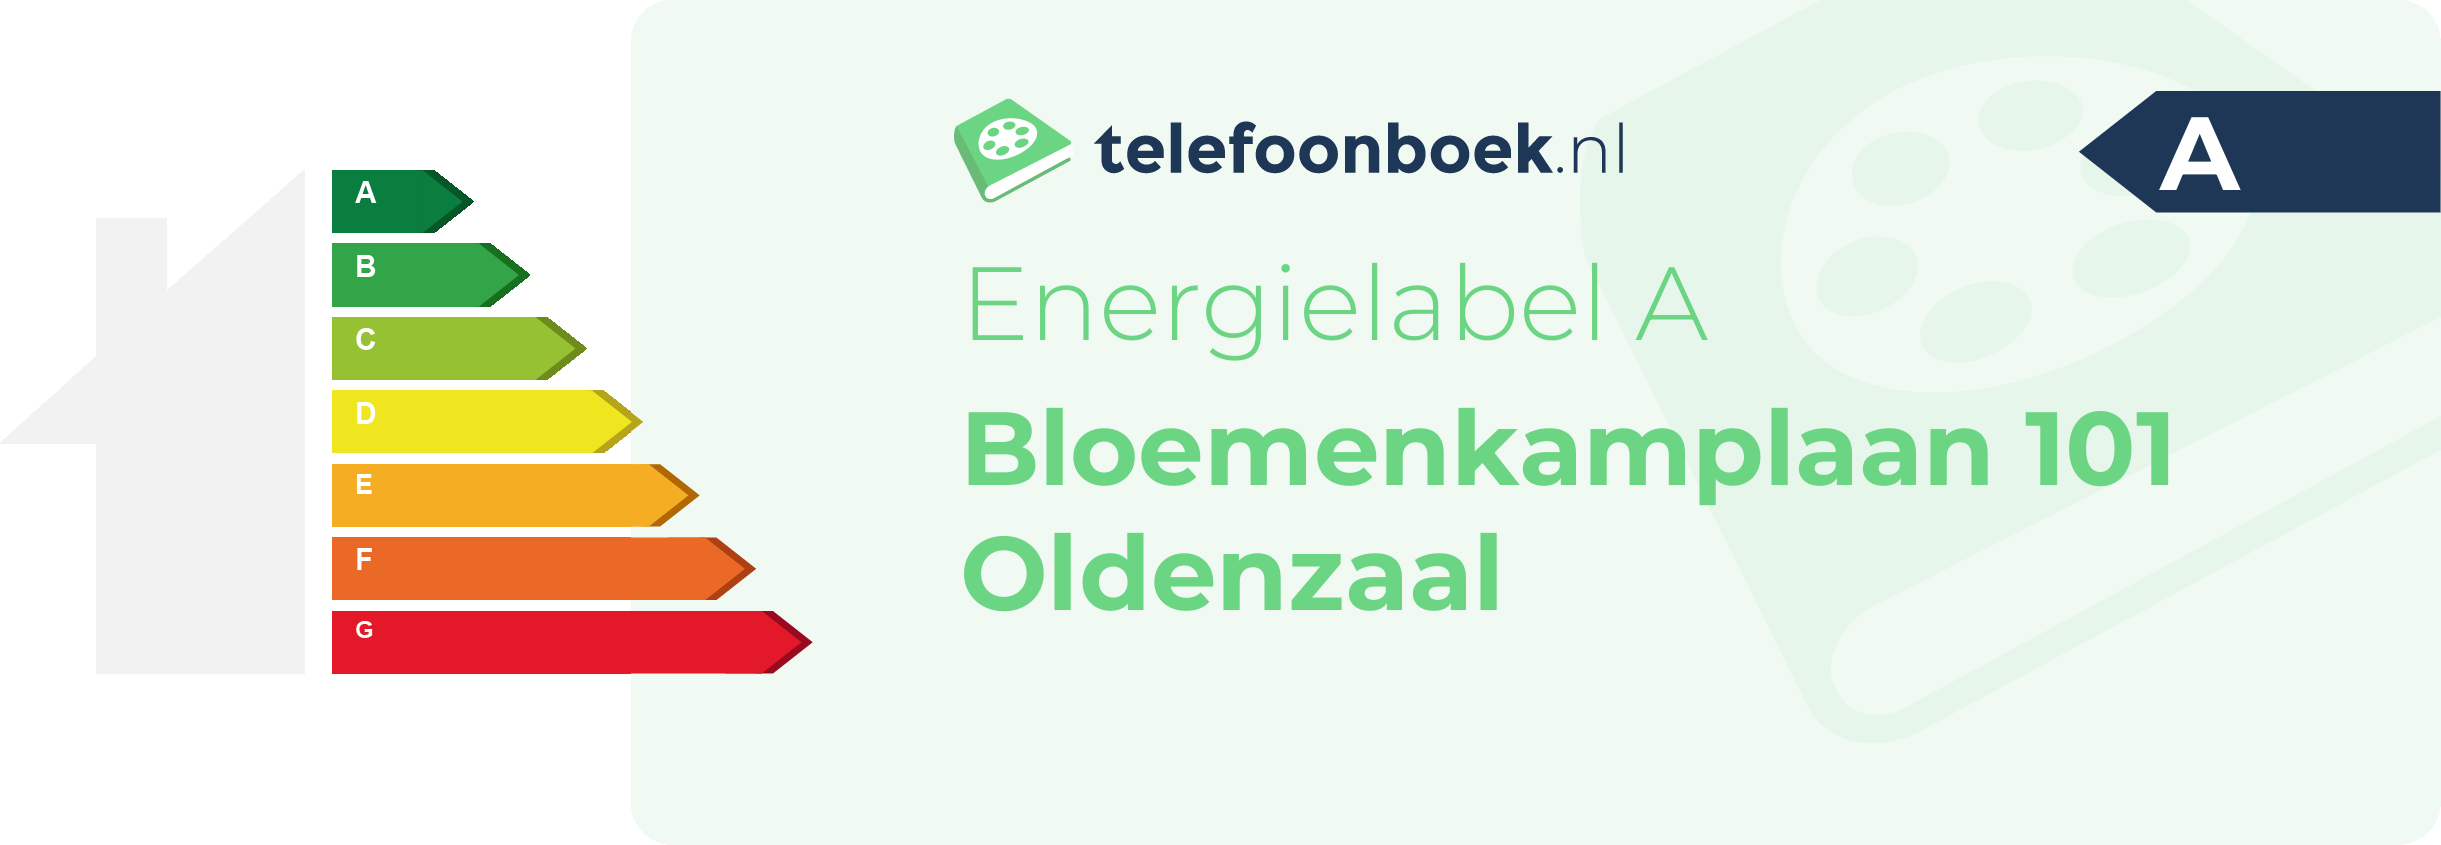 Energielabel Bloemenkamplaan 101 Oldenzaal